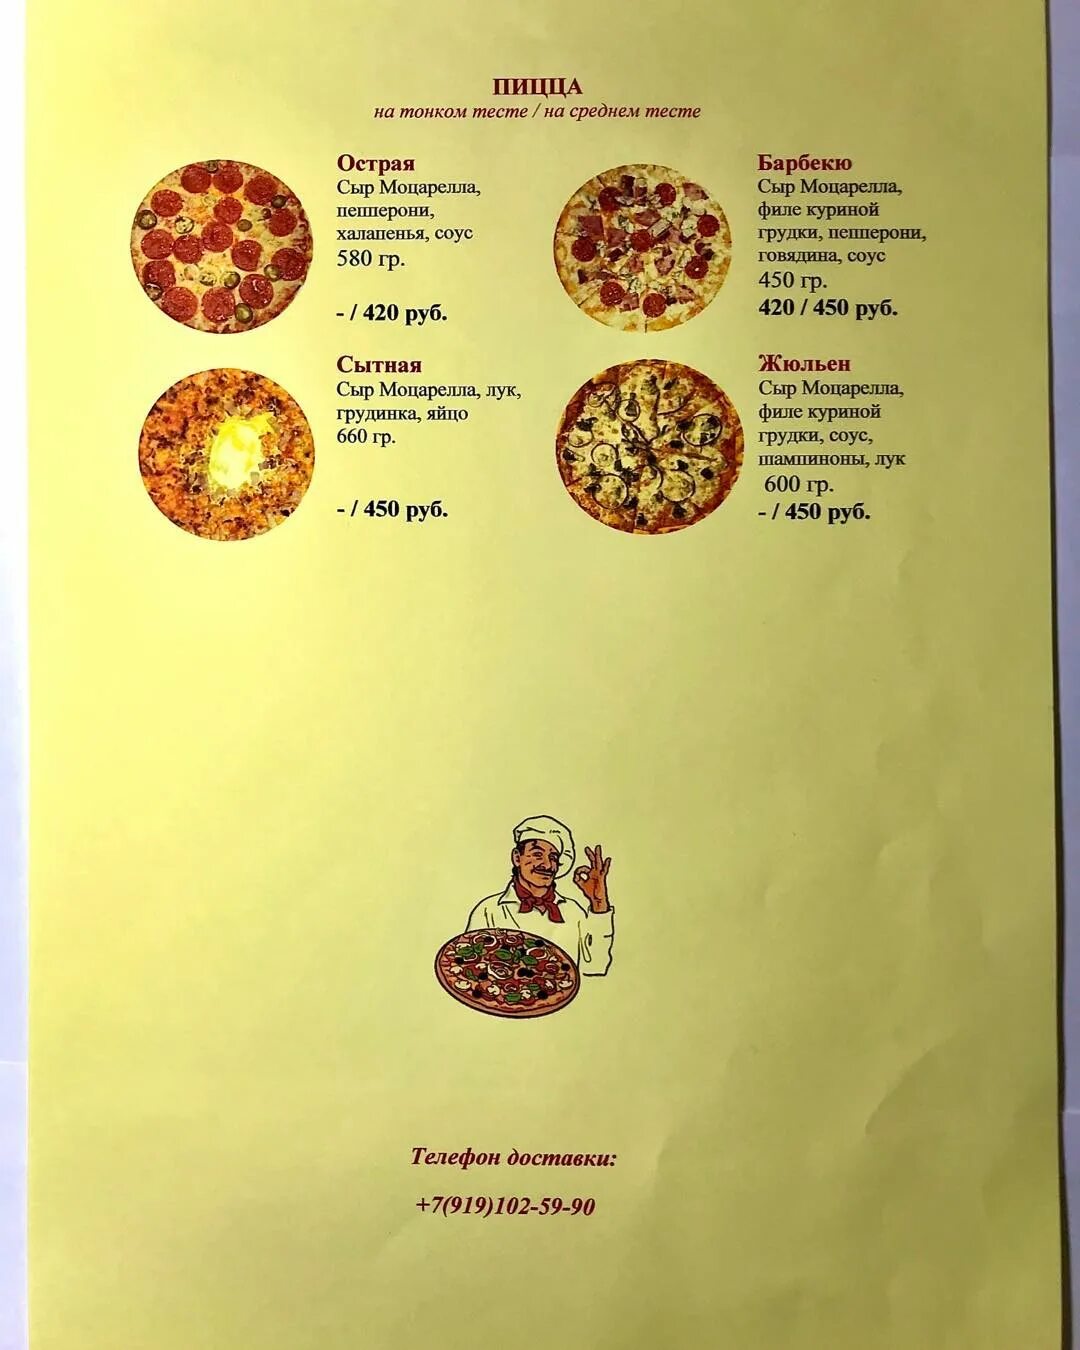 технологическая карта приготовления пиццы пепперони фото 113